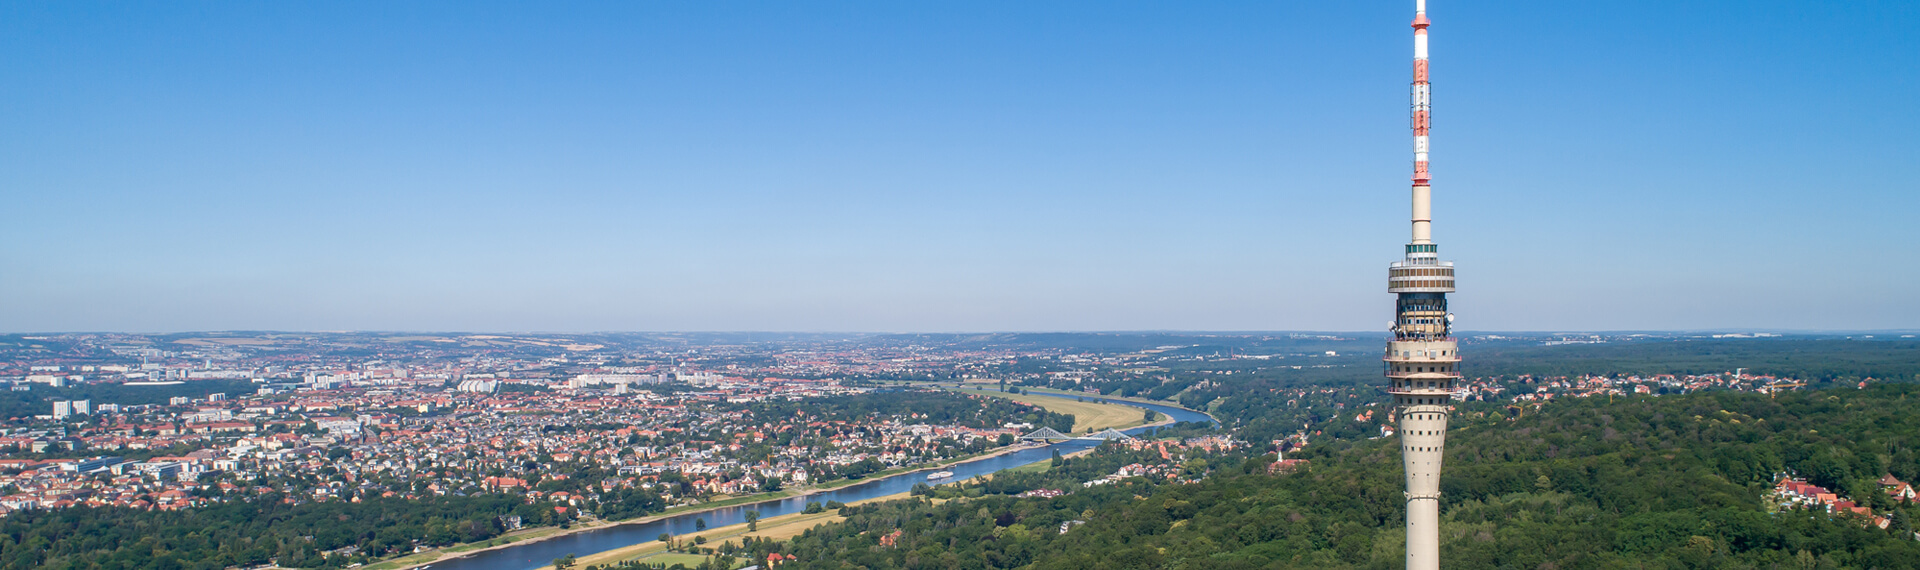 Fernsehturm Dresden - einmalige Lage an der Elbe mit Blick auf das blaue Wunder